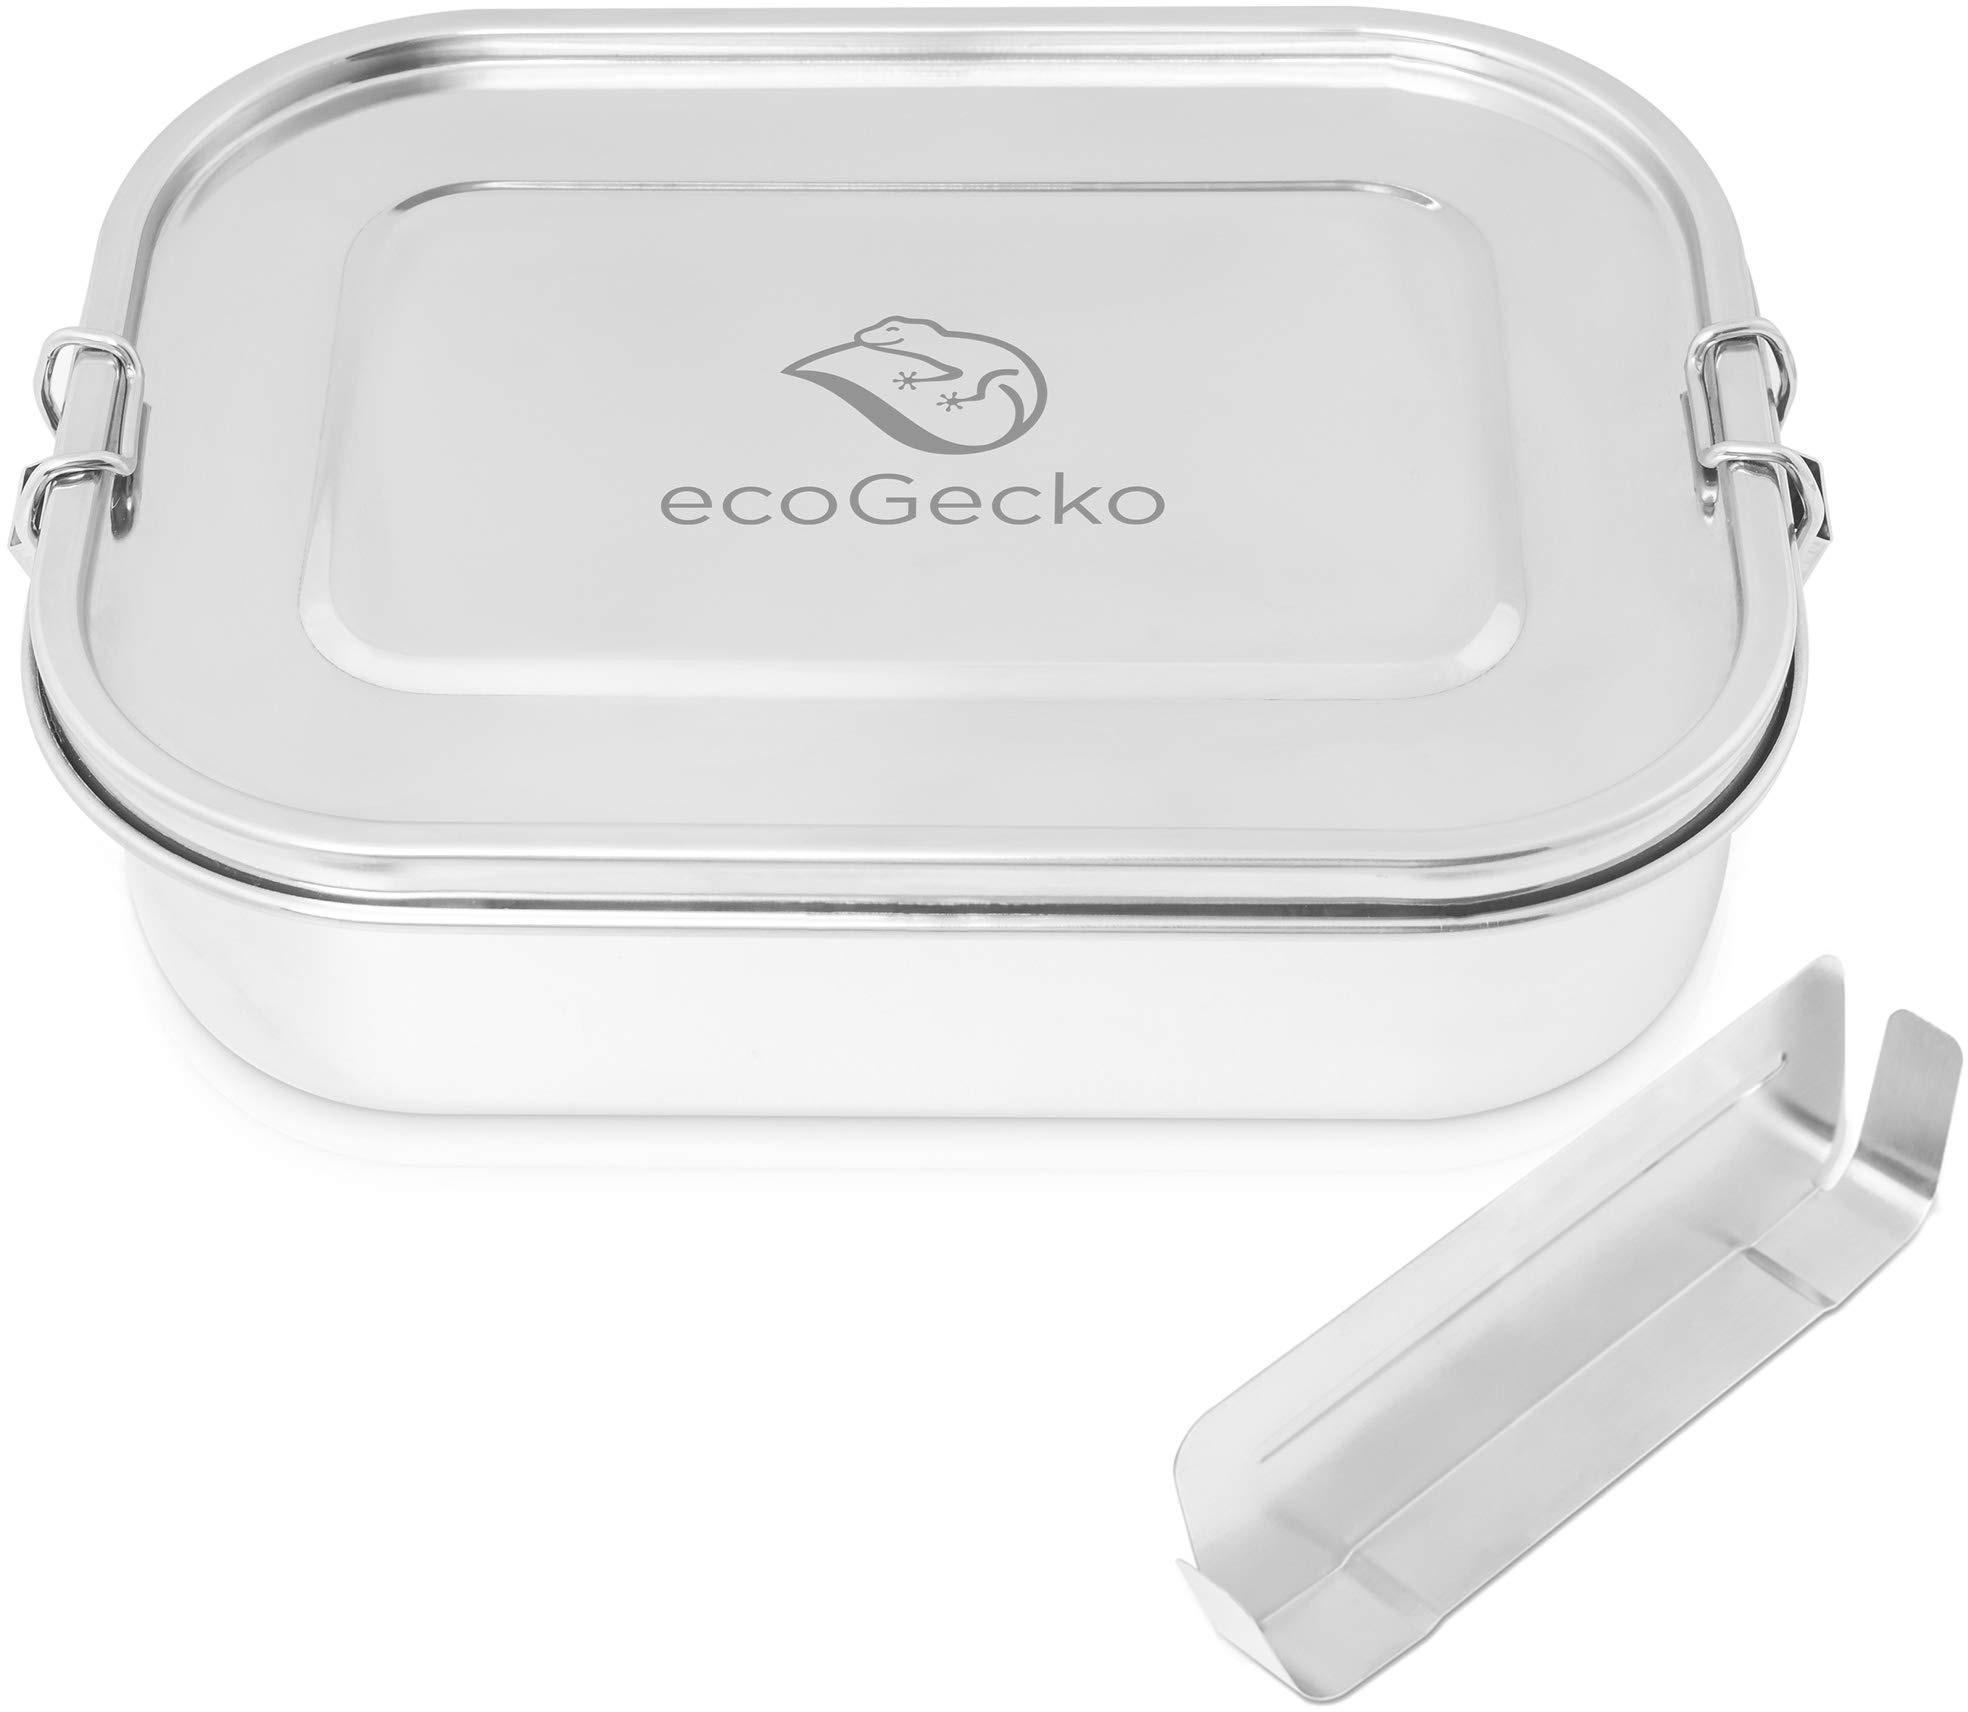 ecoGecko® Premium Brotdose aus Edelstahl | das Original | auslaufsicher & dicht | Die hochwertige Lunchbox für Kinder und Erwachsene | 1400ml Fassungsvermögen | inkl. herausnehmbarer Trennwand